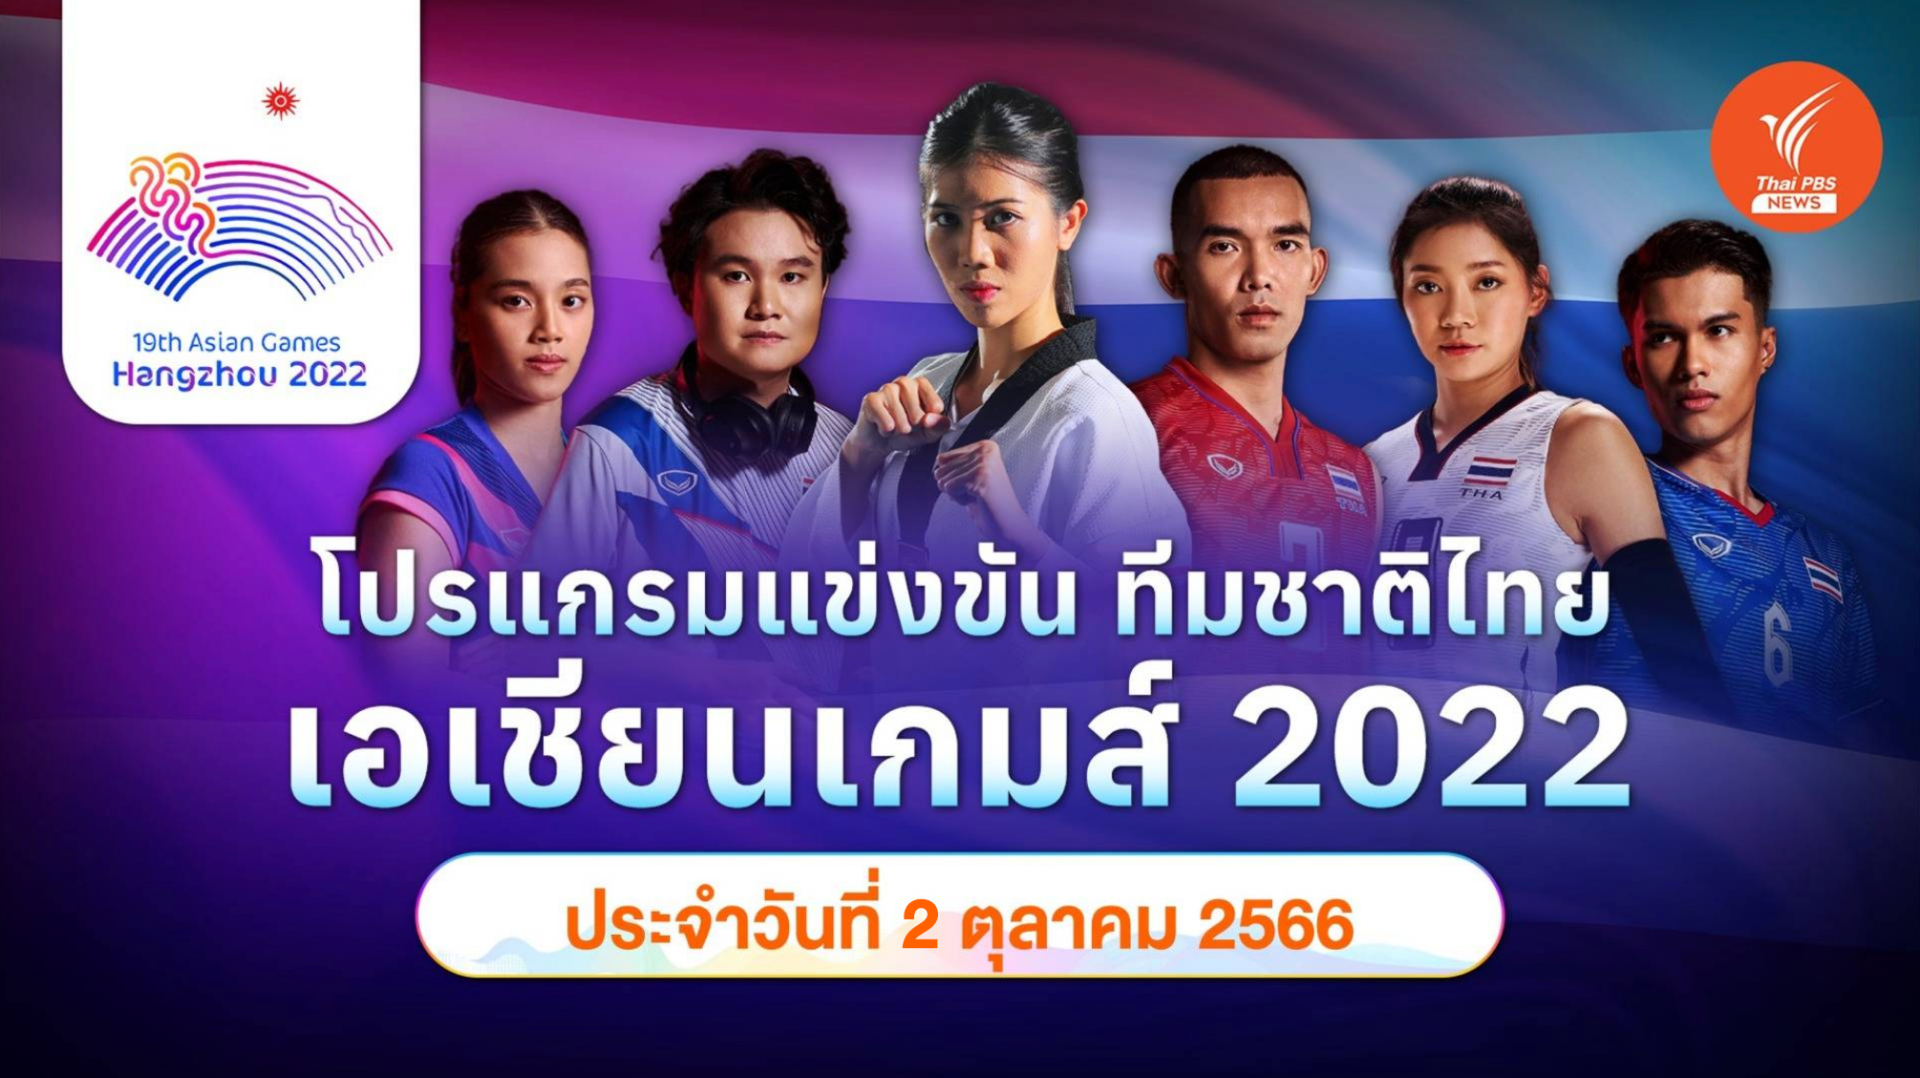 โปรแกรมการแข่งขัน เอเชียนเกมส์ 2022 ทัพนักกีฬาไทย วันที่ 2 ต.ค.2566